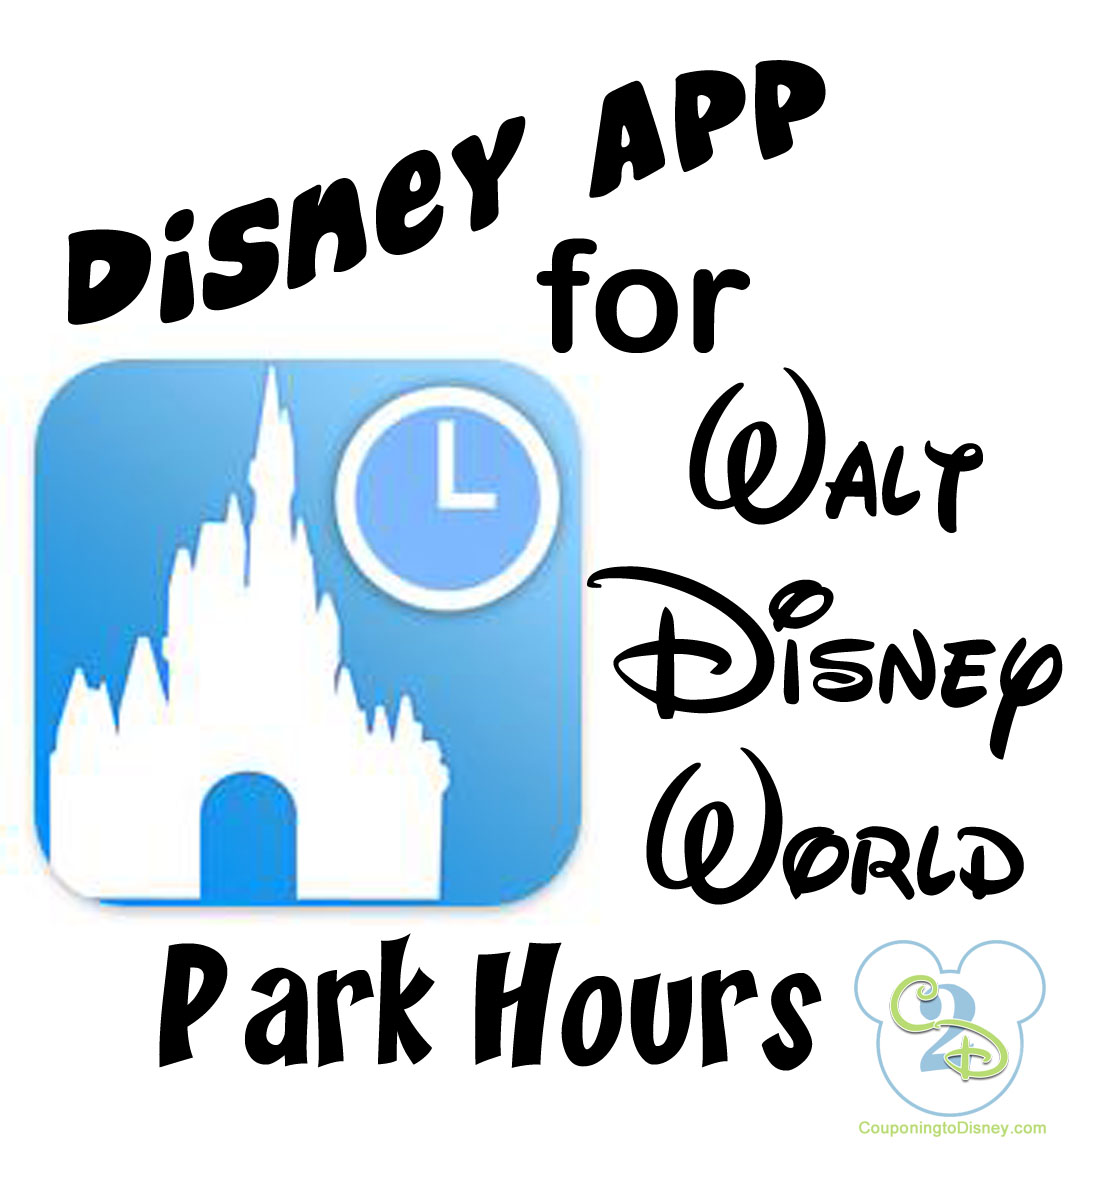 Disney Park Hours